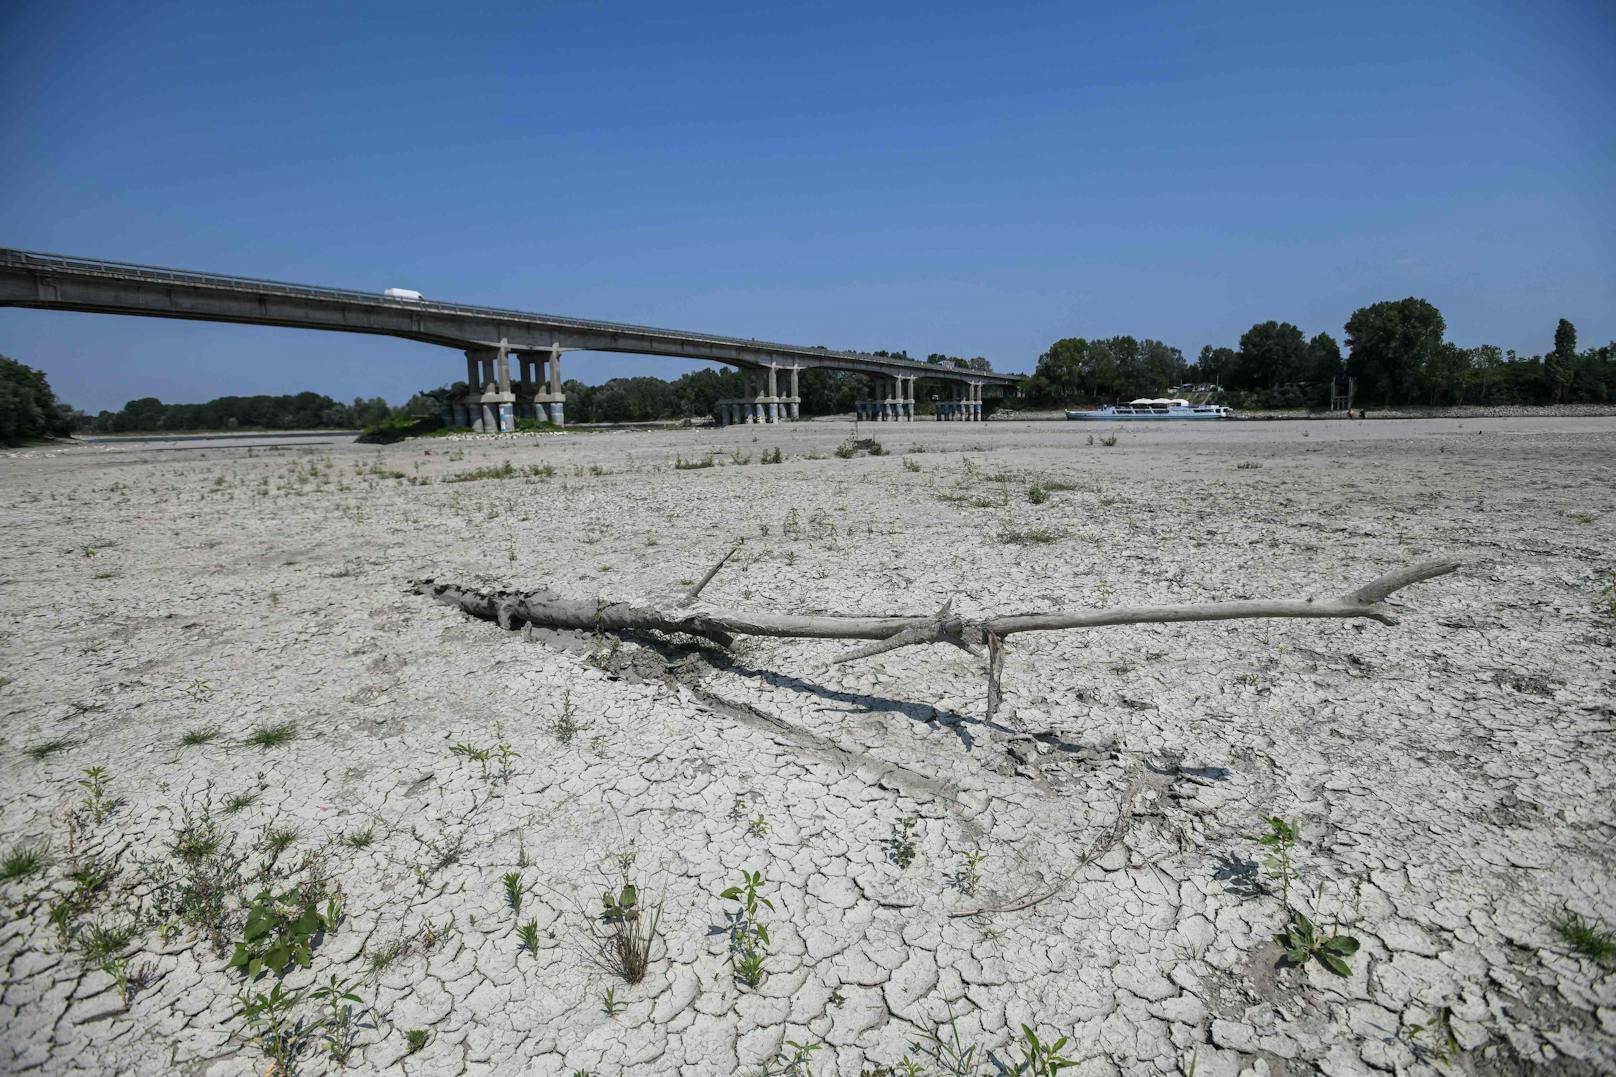 In Norditalien leidet die Po-Ebene unter der <a target="_blank" href="https://www.heute.at/s/40-grad-und-noch-mehr-erste-hitze-tote-in-europa-100212962">schlimmsten Dürre seit 70 Jahren</a>, einige Gemeinden rationierten die Wasserverteilung.